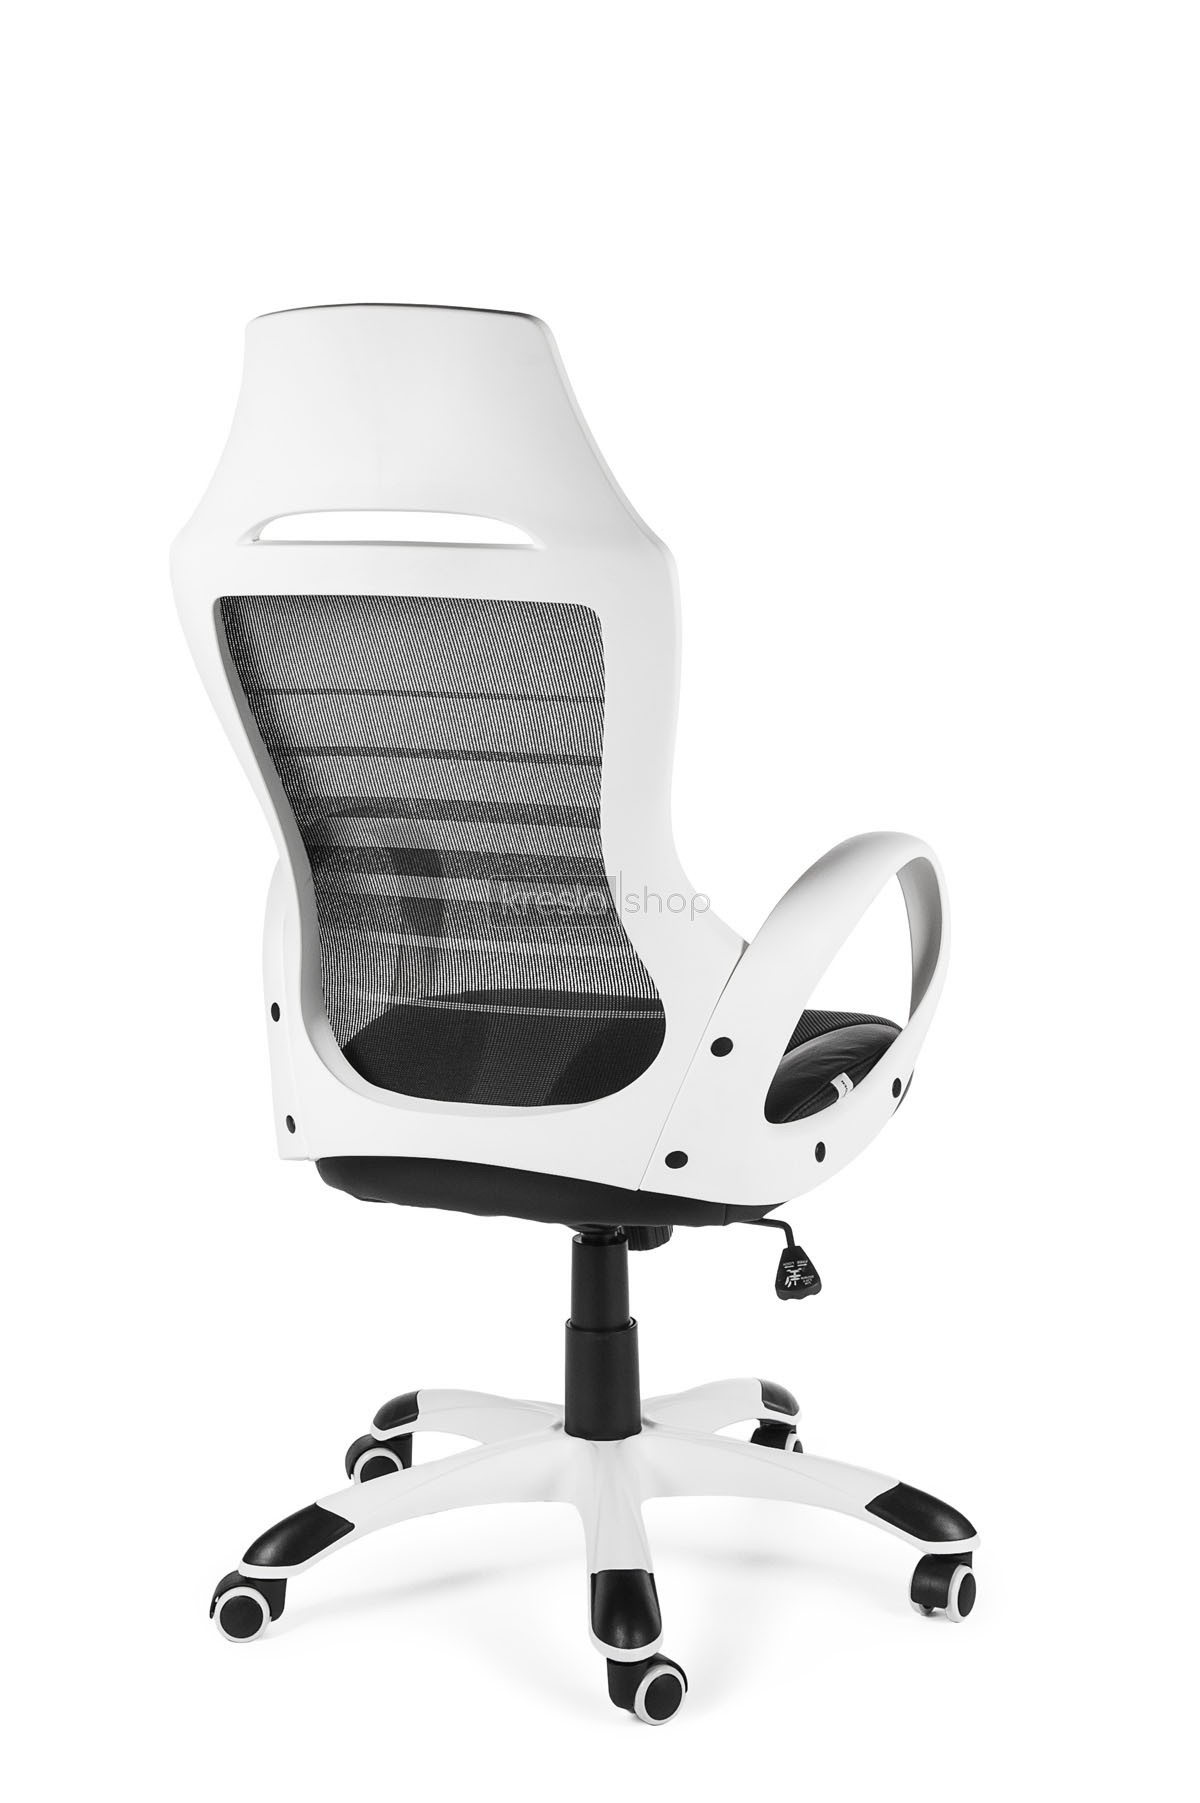 Кресло для персонала Norden Реноме CX0729H01 white+black